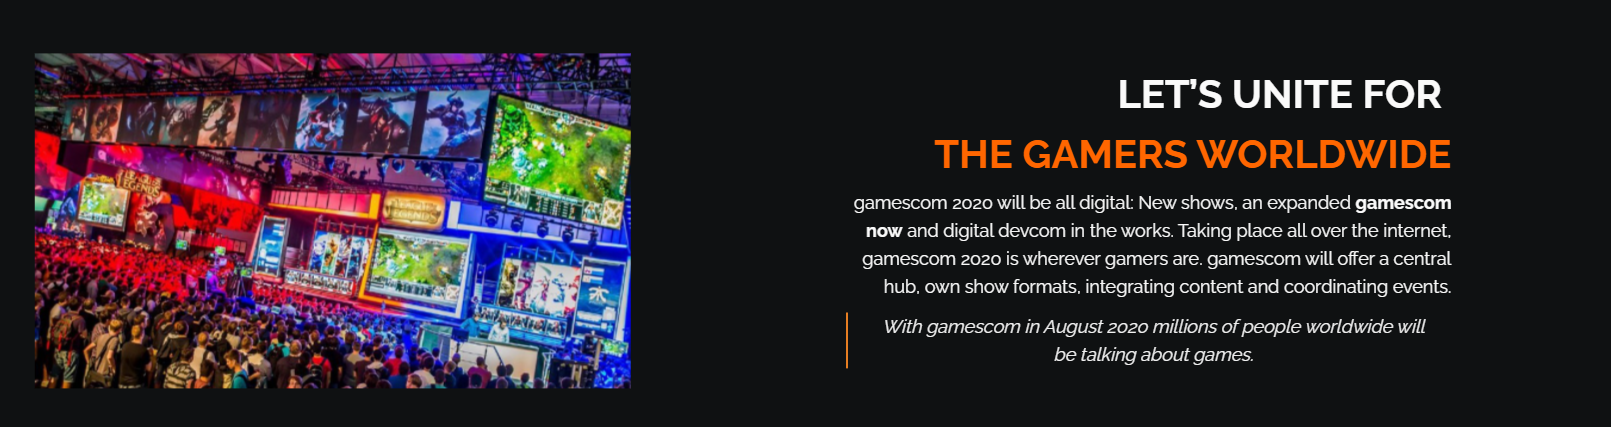 gamescom 2020 official partner gaming in turkey